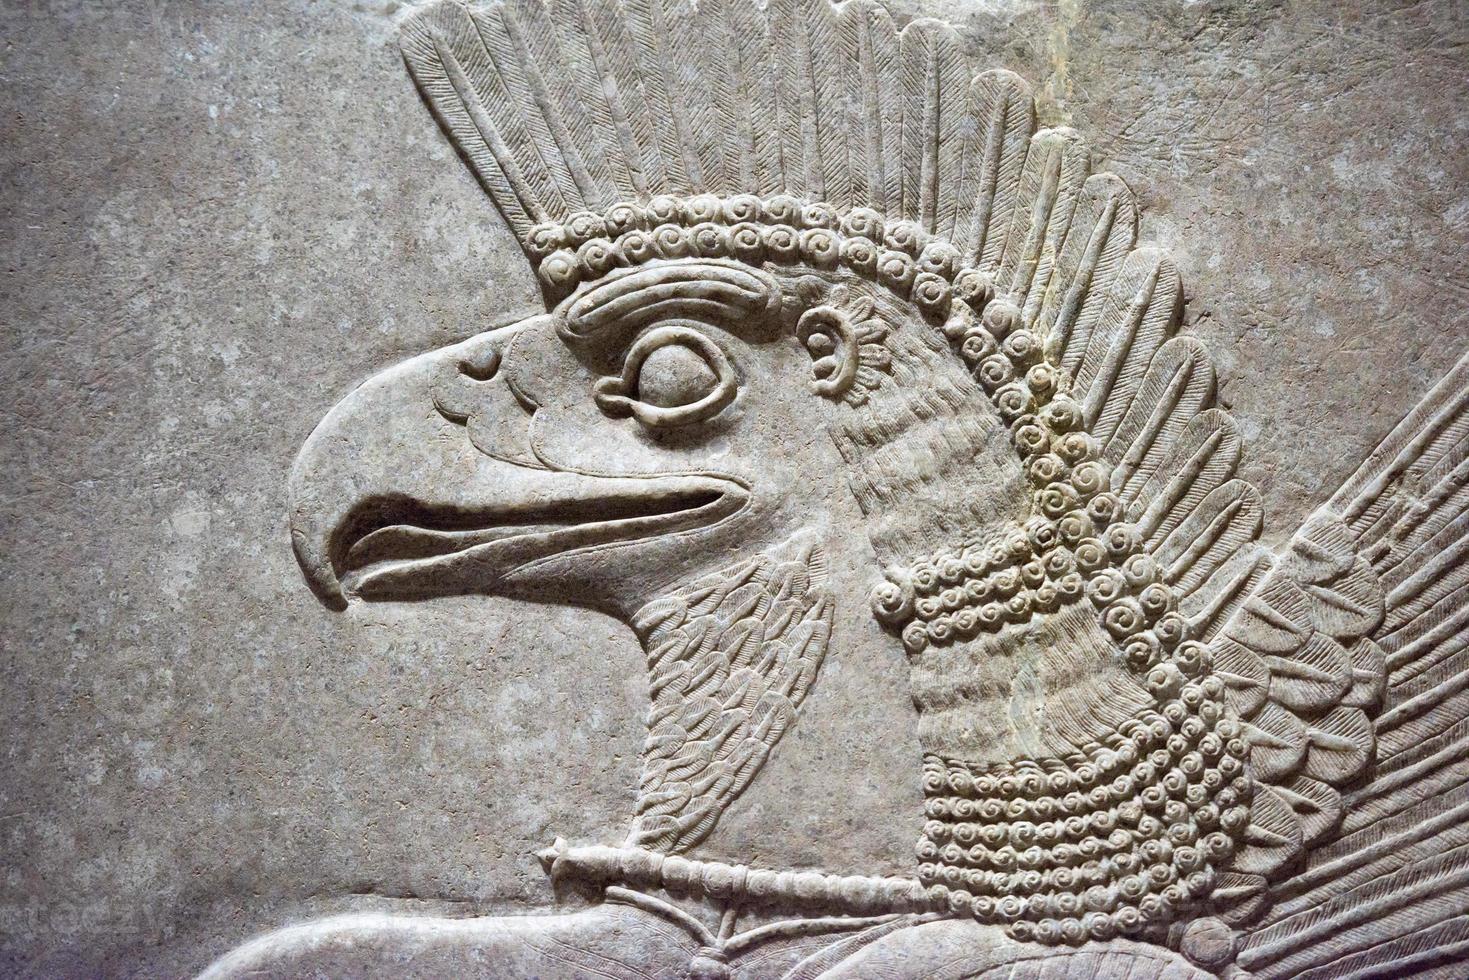 gammal babylonia och assyrien skulptur från mesopotamia foto